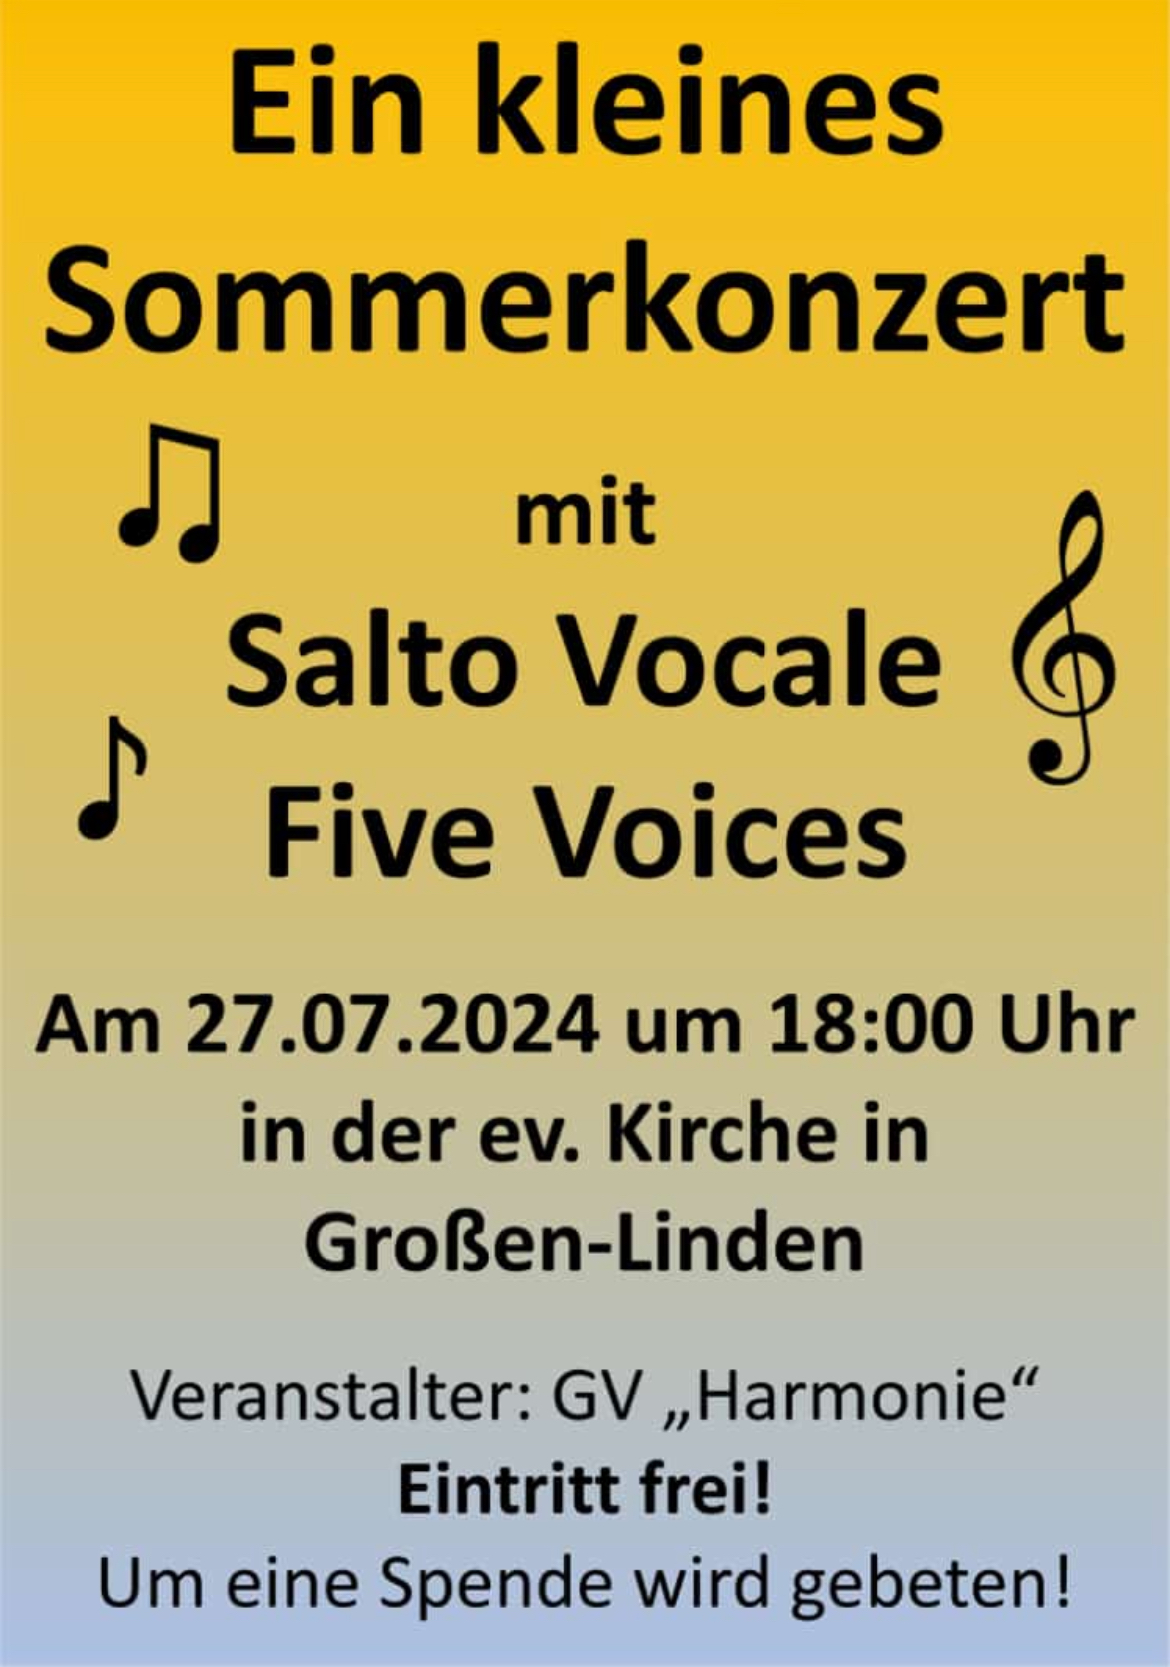 Plakat für das kleine Sommerkonzert mit Salto Vocale und den Five Voices am 27.07.2024 um 18 Uhr in der evangelischen Kirche in Großen-Linden.